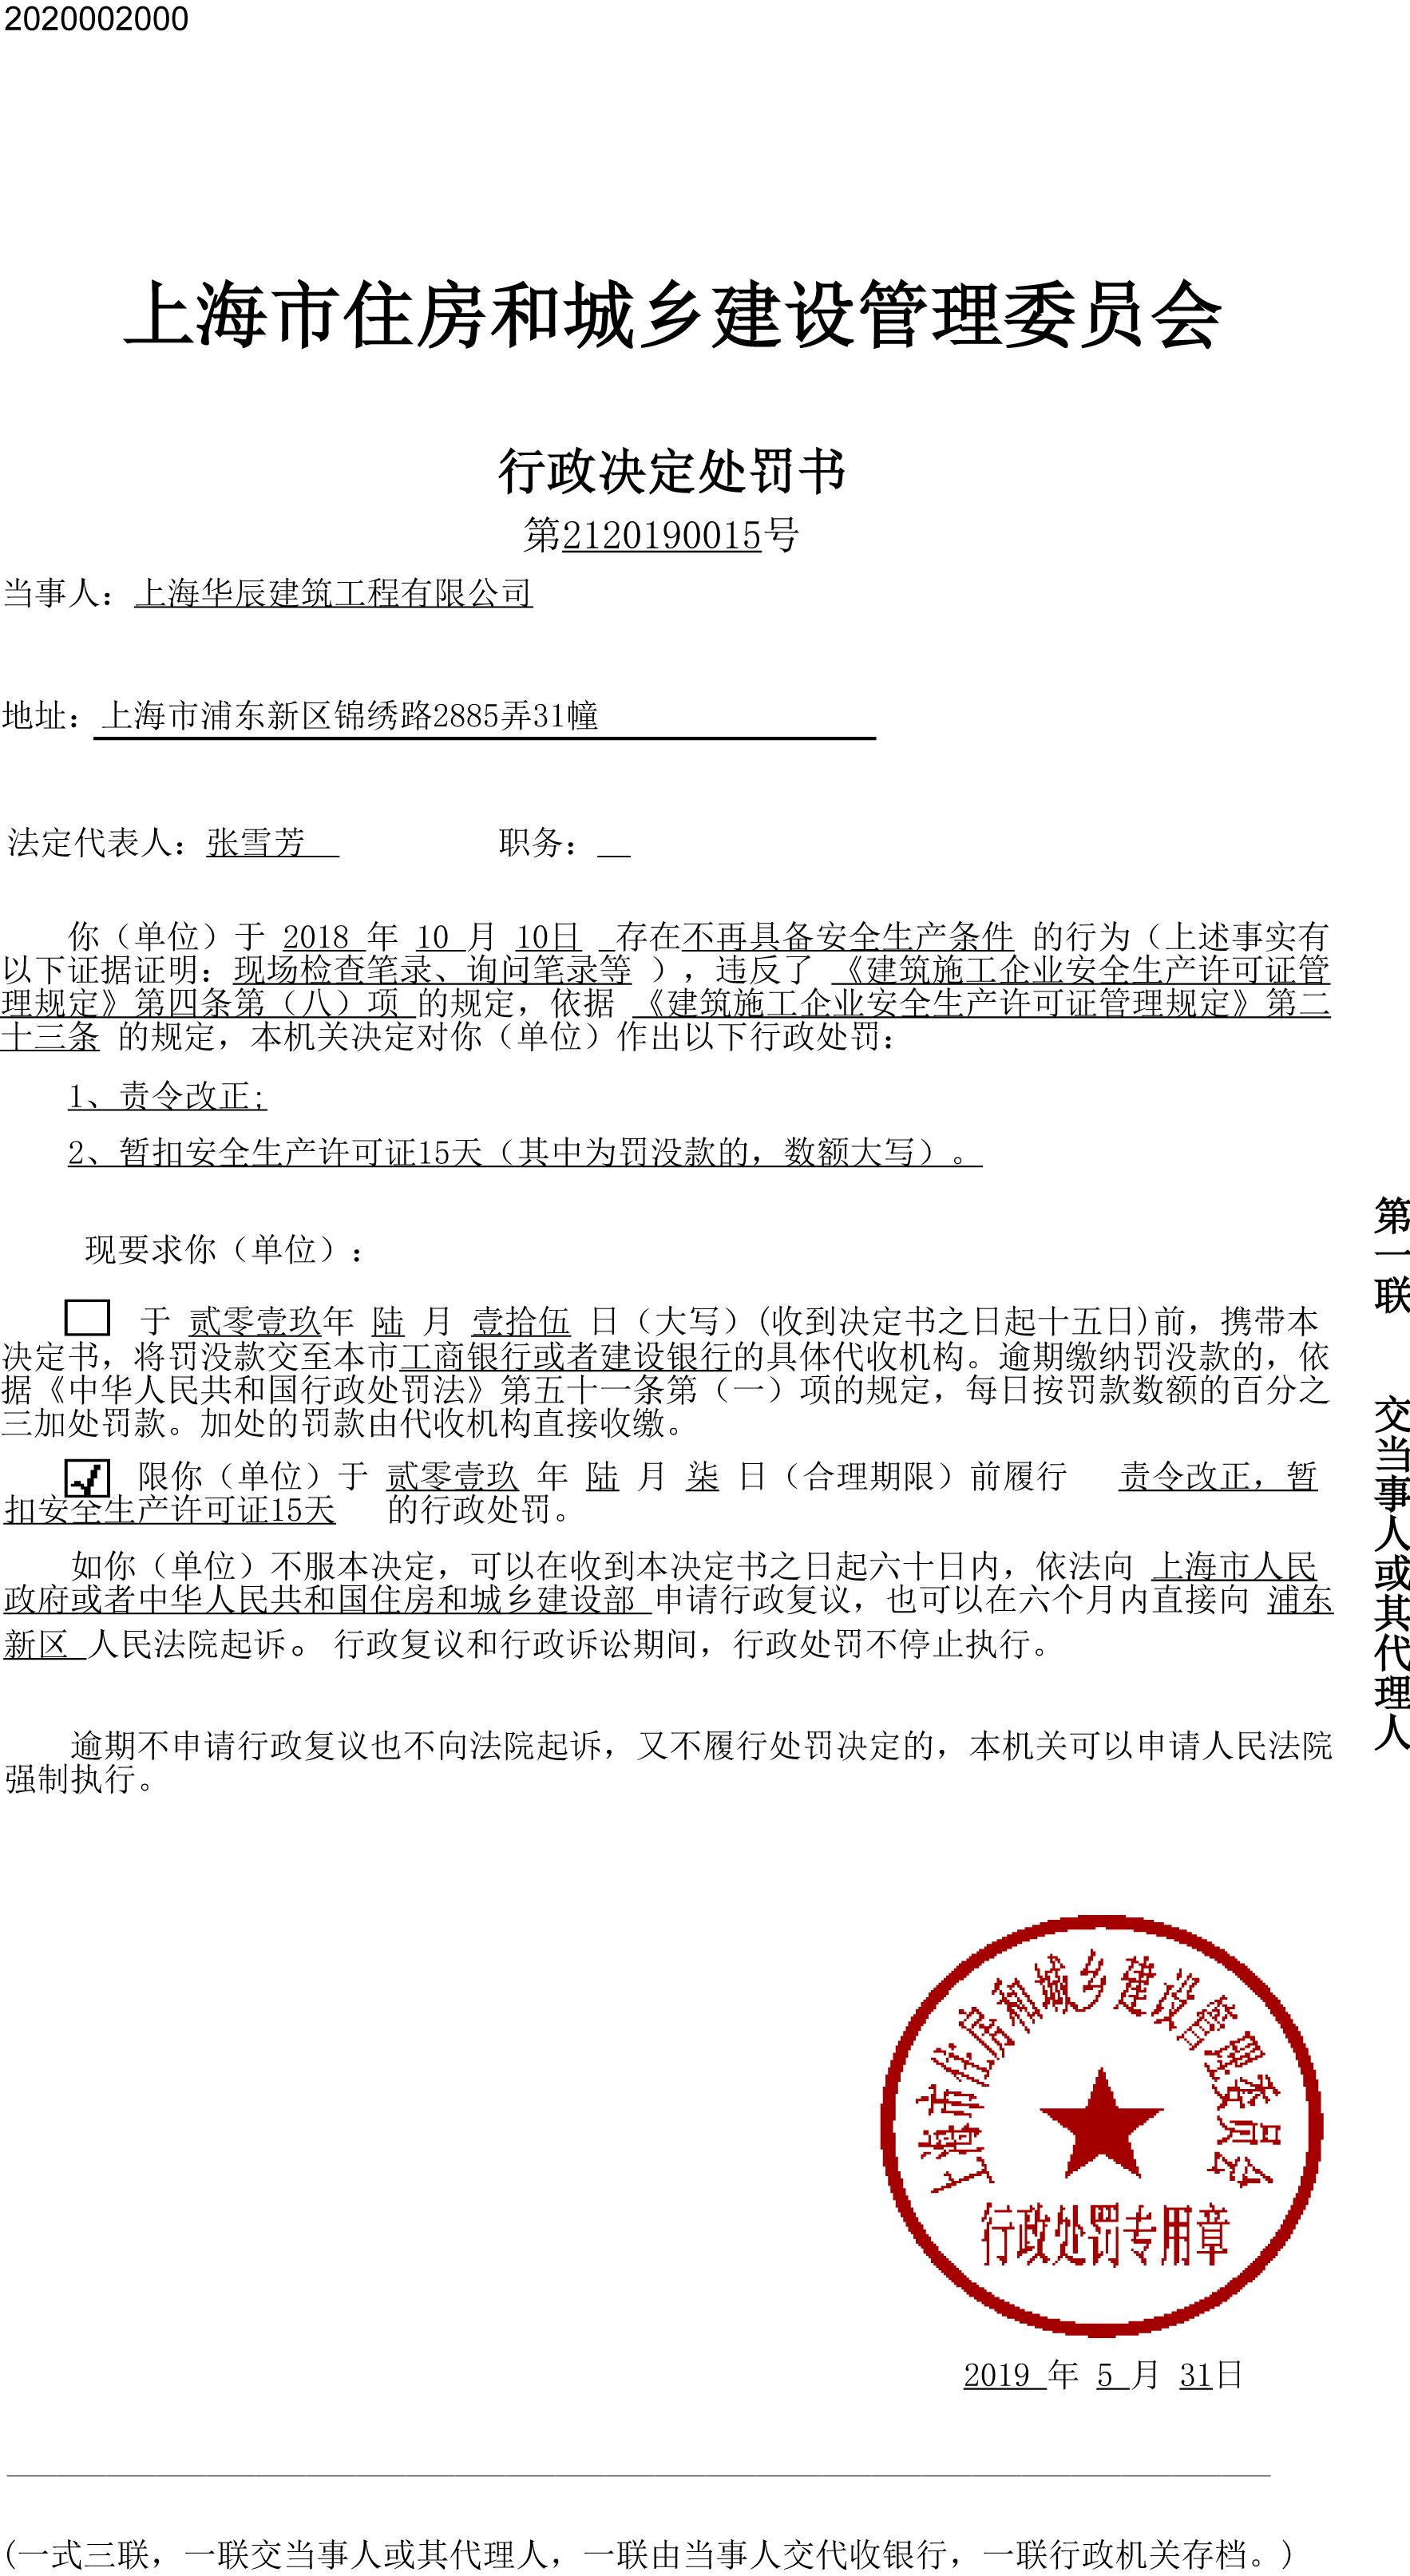 上海华辰建筑工程有限公司违反安全生产相关规定被暂扣安全生产许可证15天